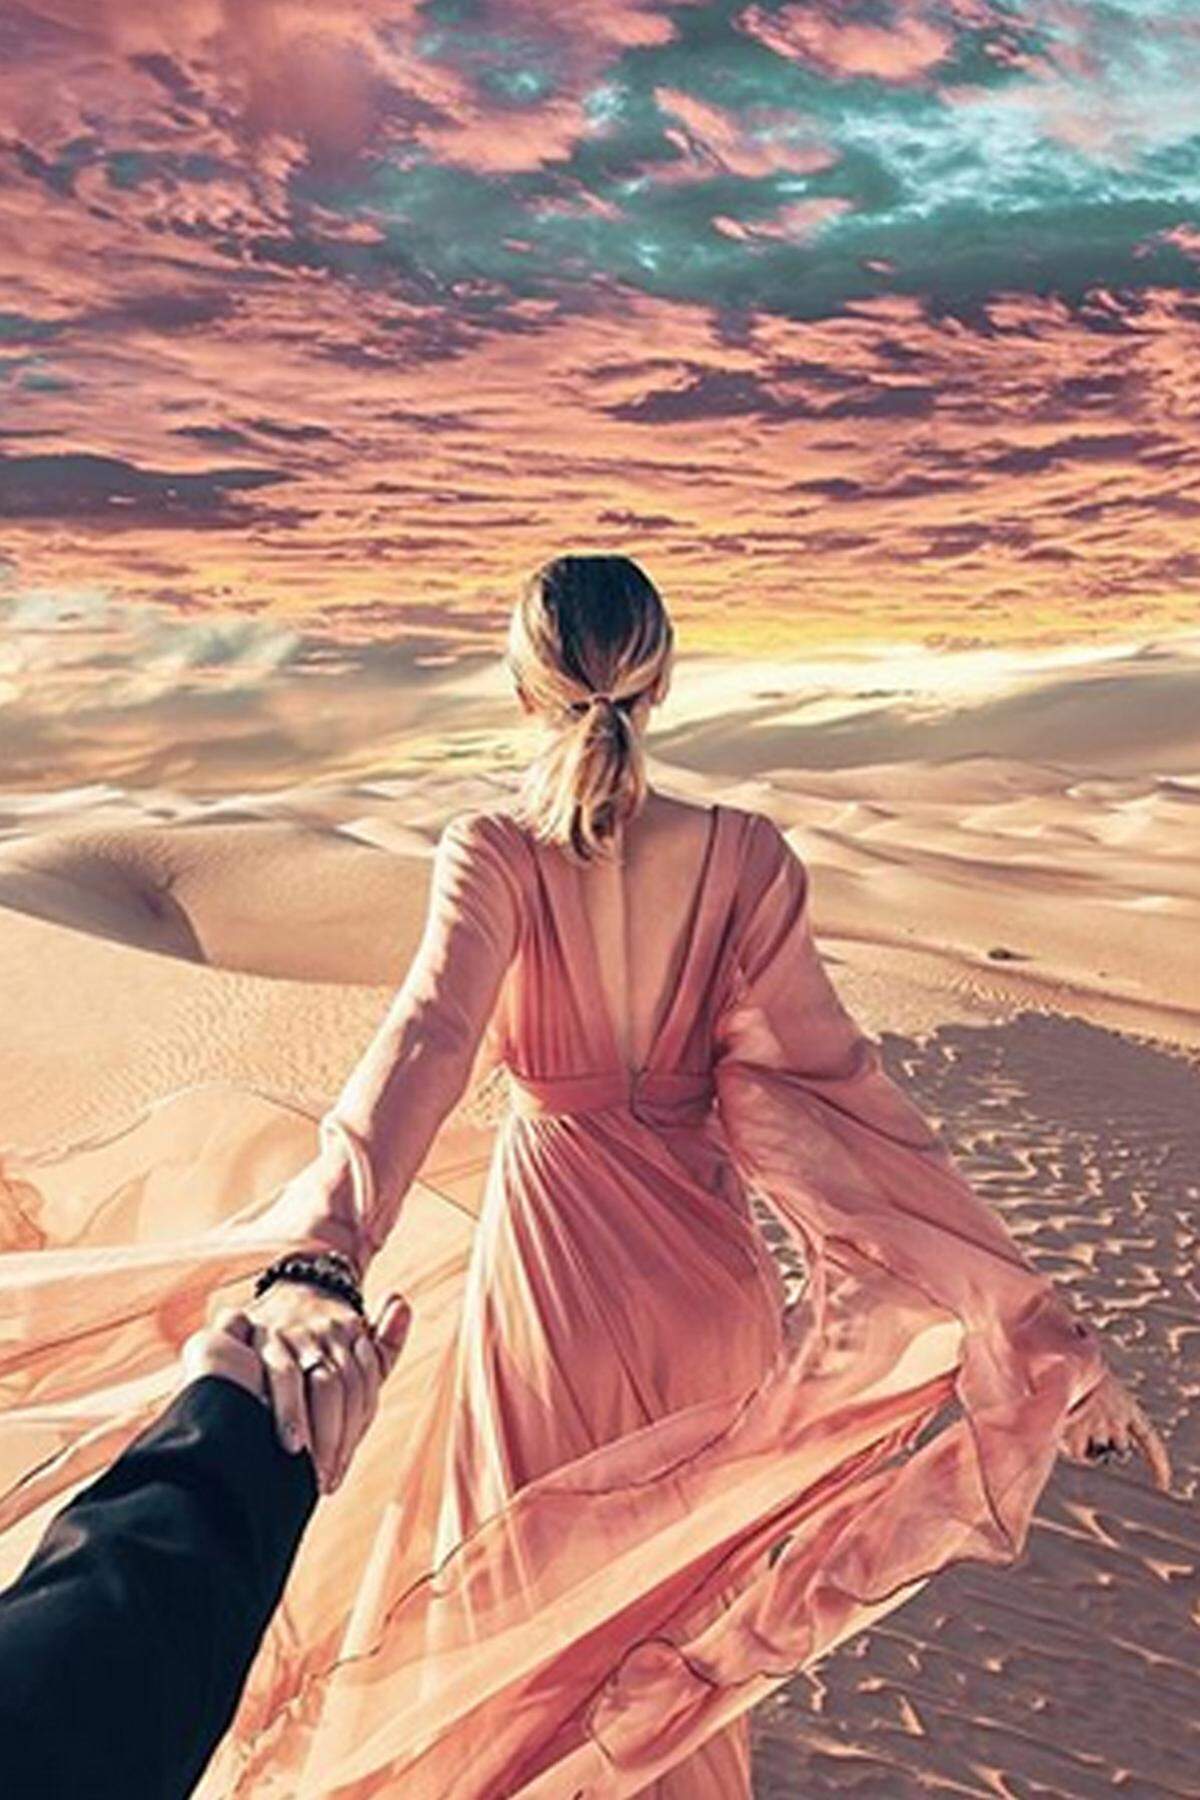 Seitdem reisen die beiden durch die Welt und veröffentlichen auf Instagram überzeichnete Fotos des Sujets. In der Wüste Abu Dhabis.